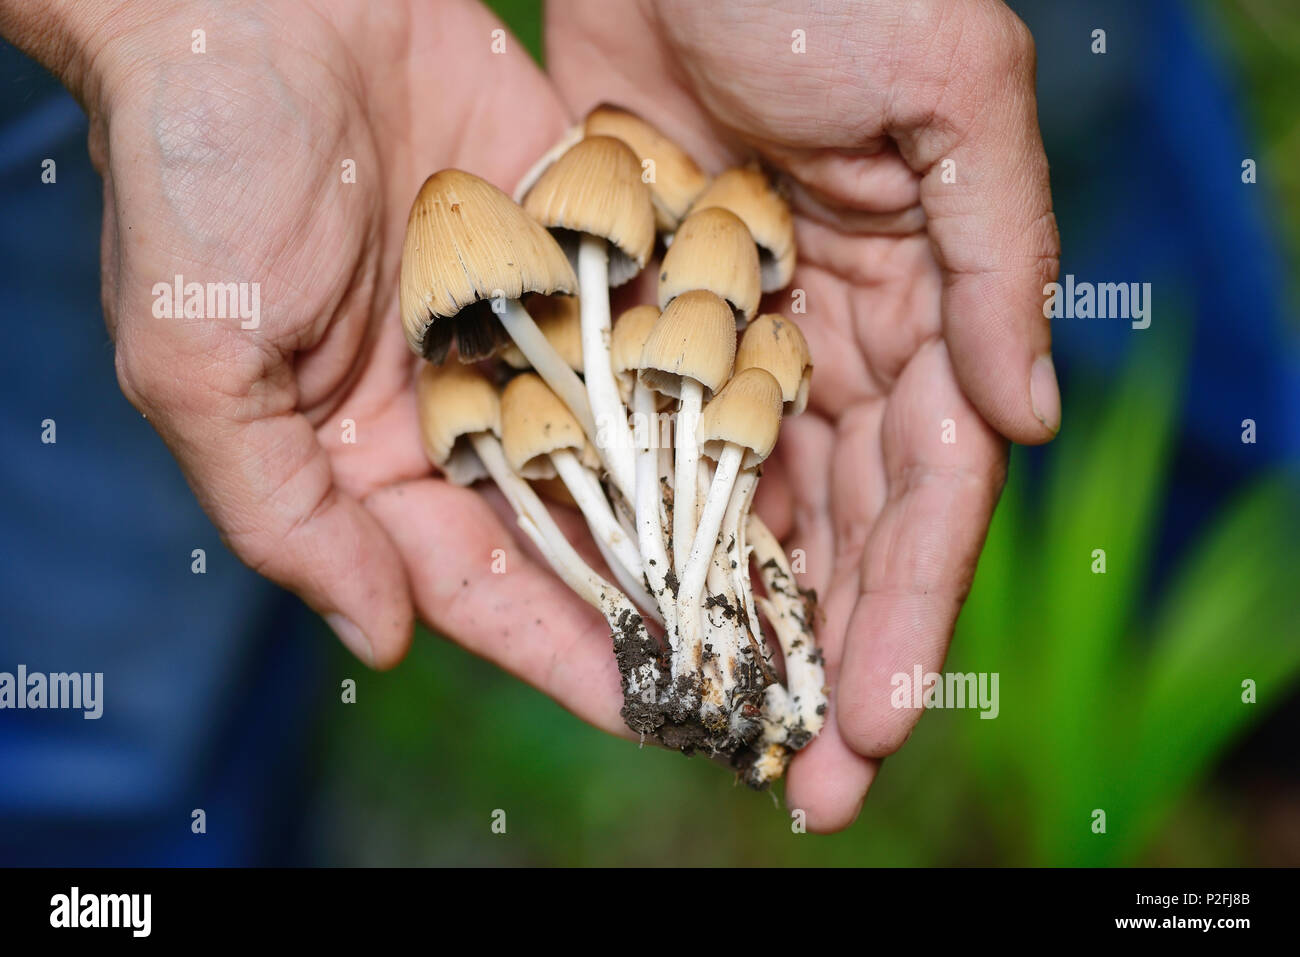 Coprinus micaceus mushroom (Coprinus atramentarius) in male hands, close up Stock Photo